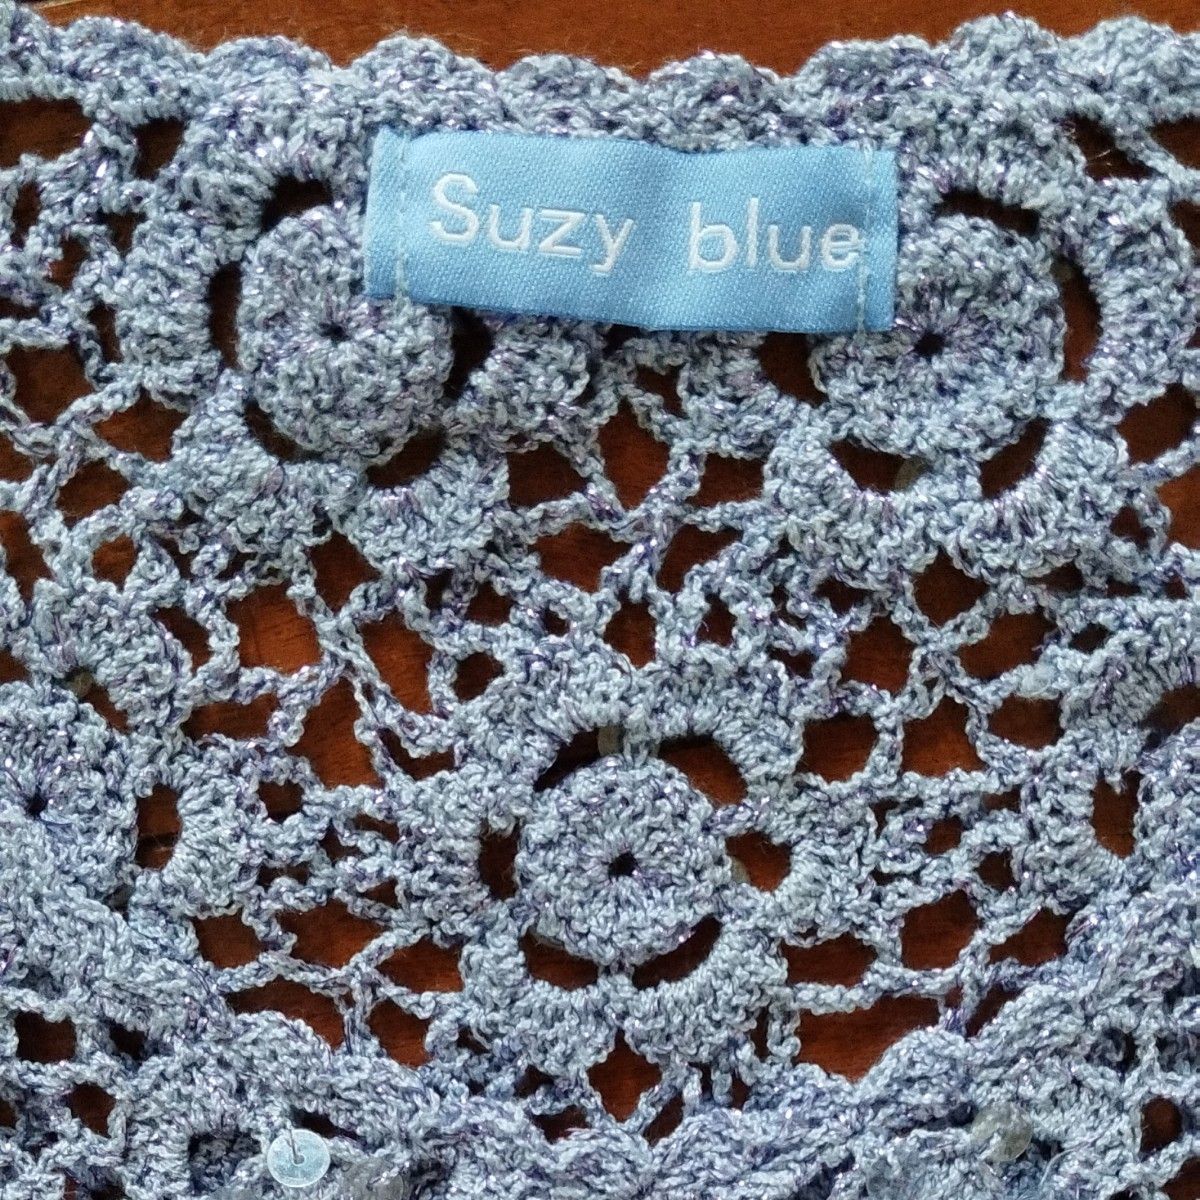 Suzy blueかぎ針編みモチーフつなぎフレンチスリーブニット